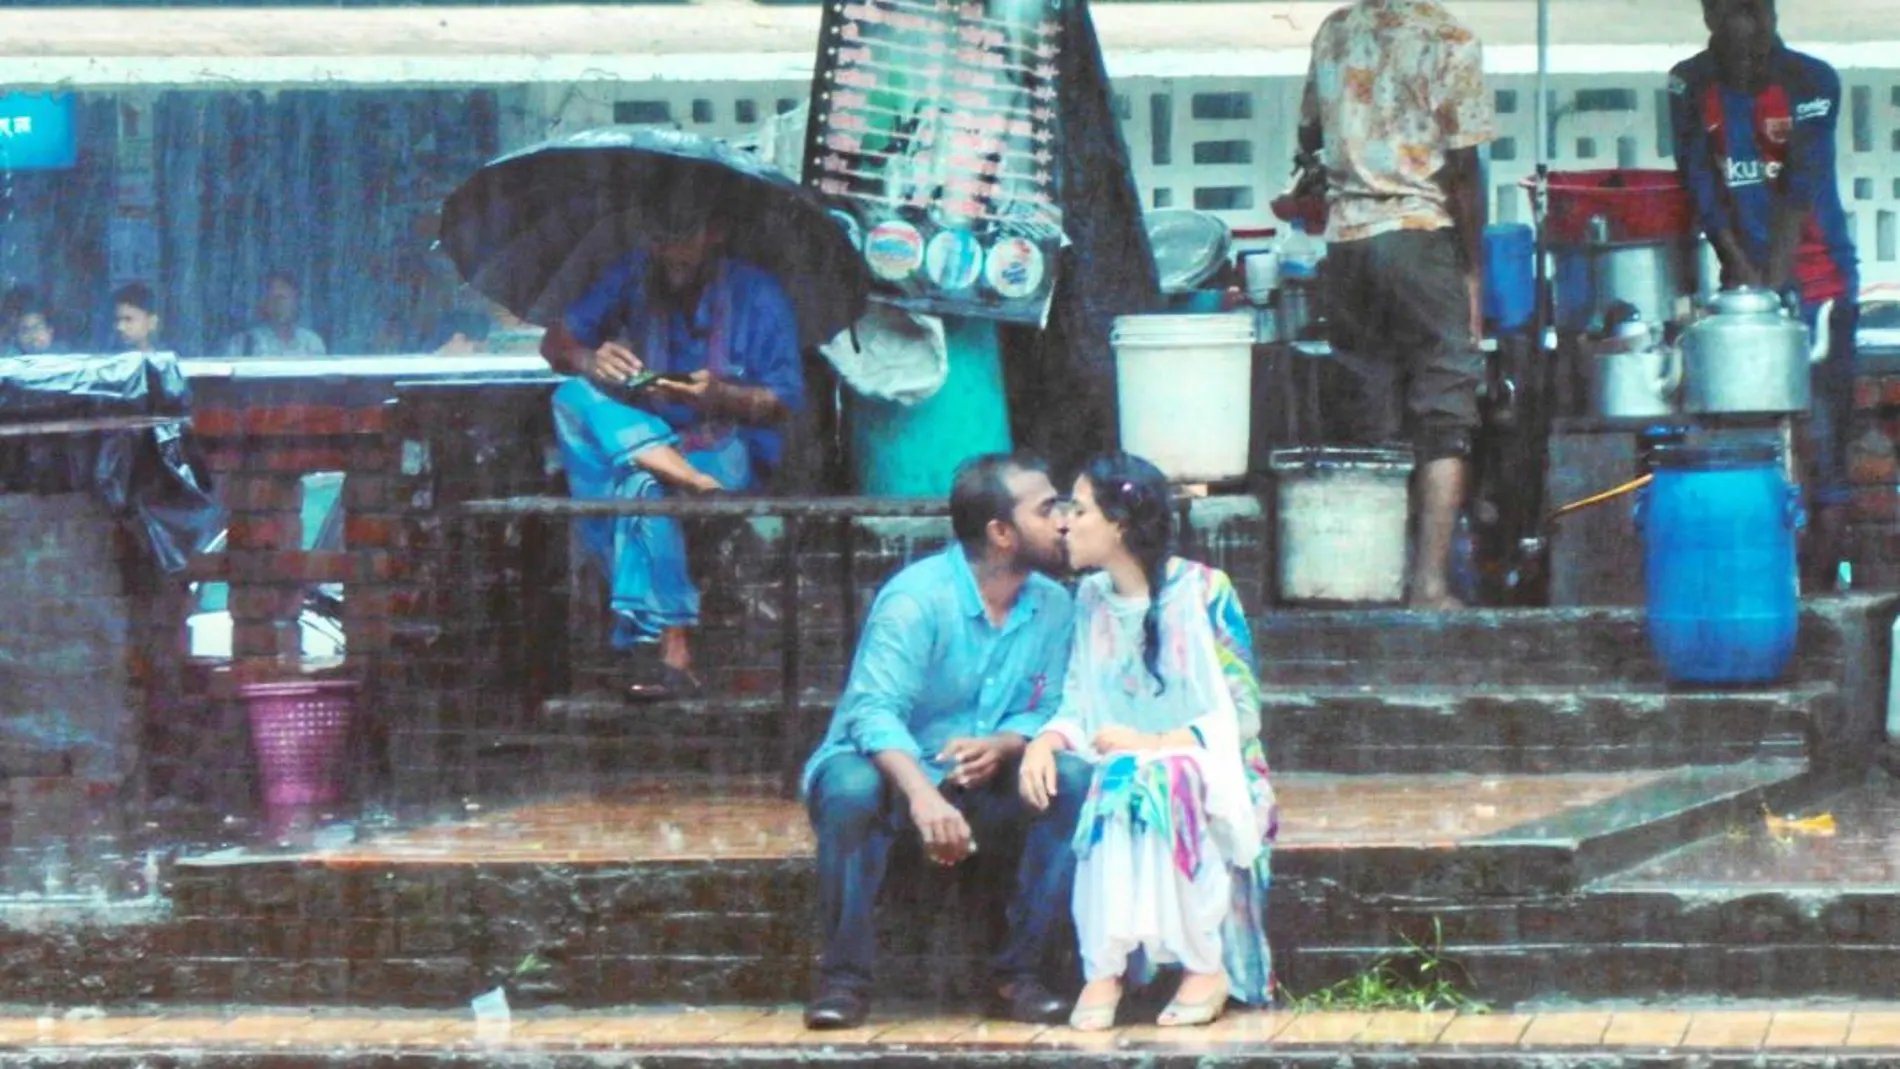 La fotografía de la pareja inmortalizada por Jibon Ahmed y que ha desencadenado una agria polémica en India / Instagram